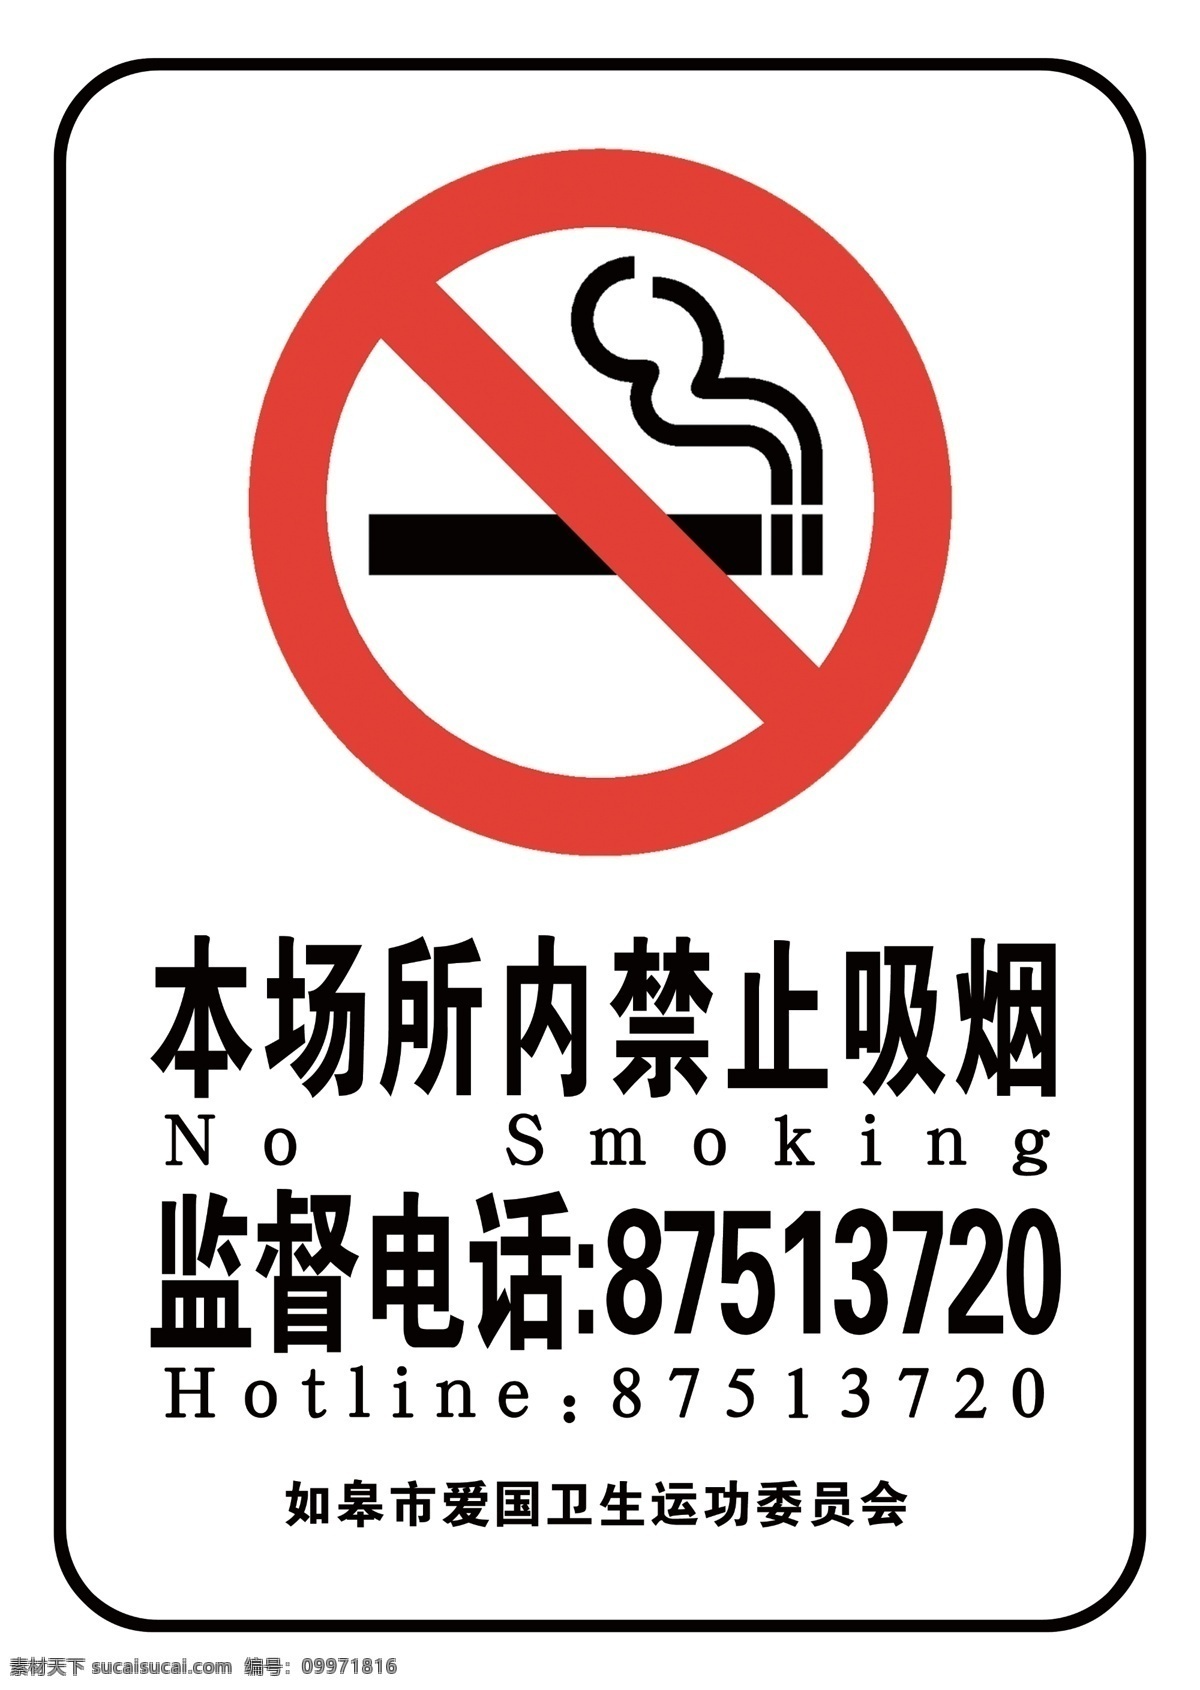 禁止吸烟 公共场所 监督管理 吸烟有害身体 严禁吸烟